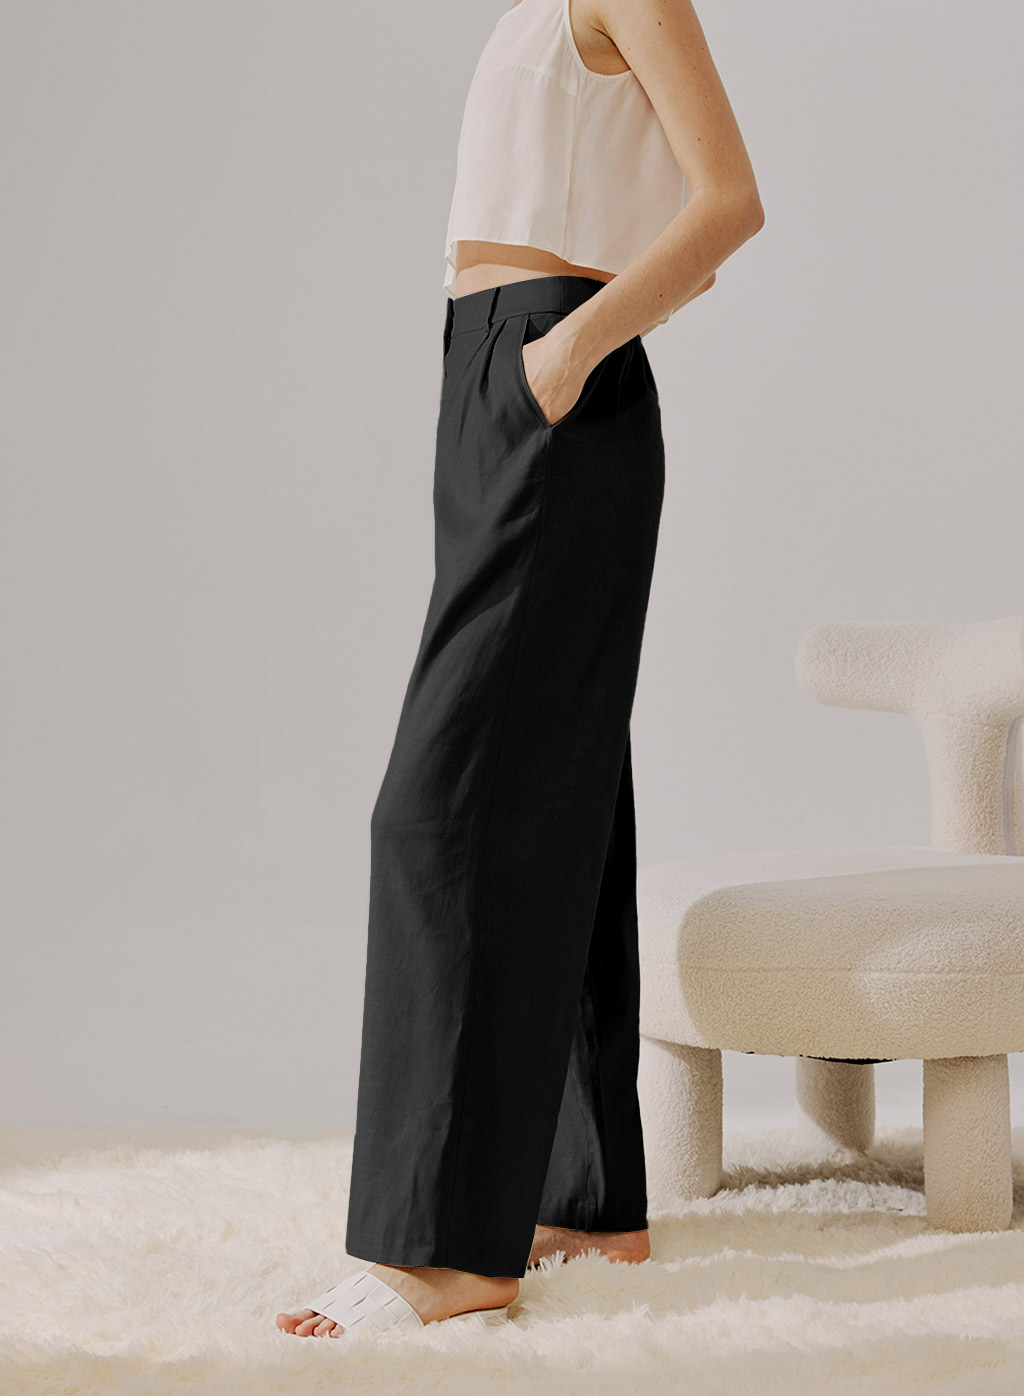 https://naploungewear.com/wp-content/uploads/2021/12/high-rise-linen-trousers-black-1.jpg